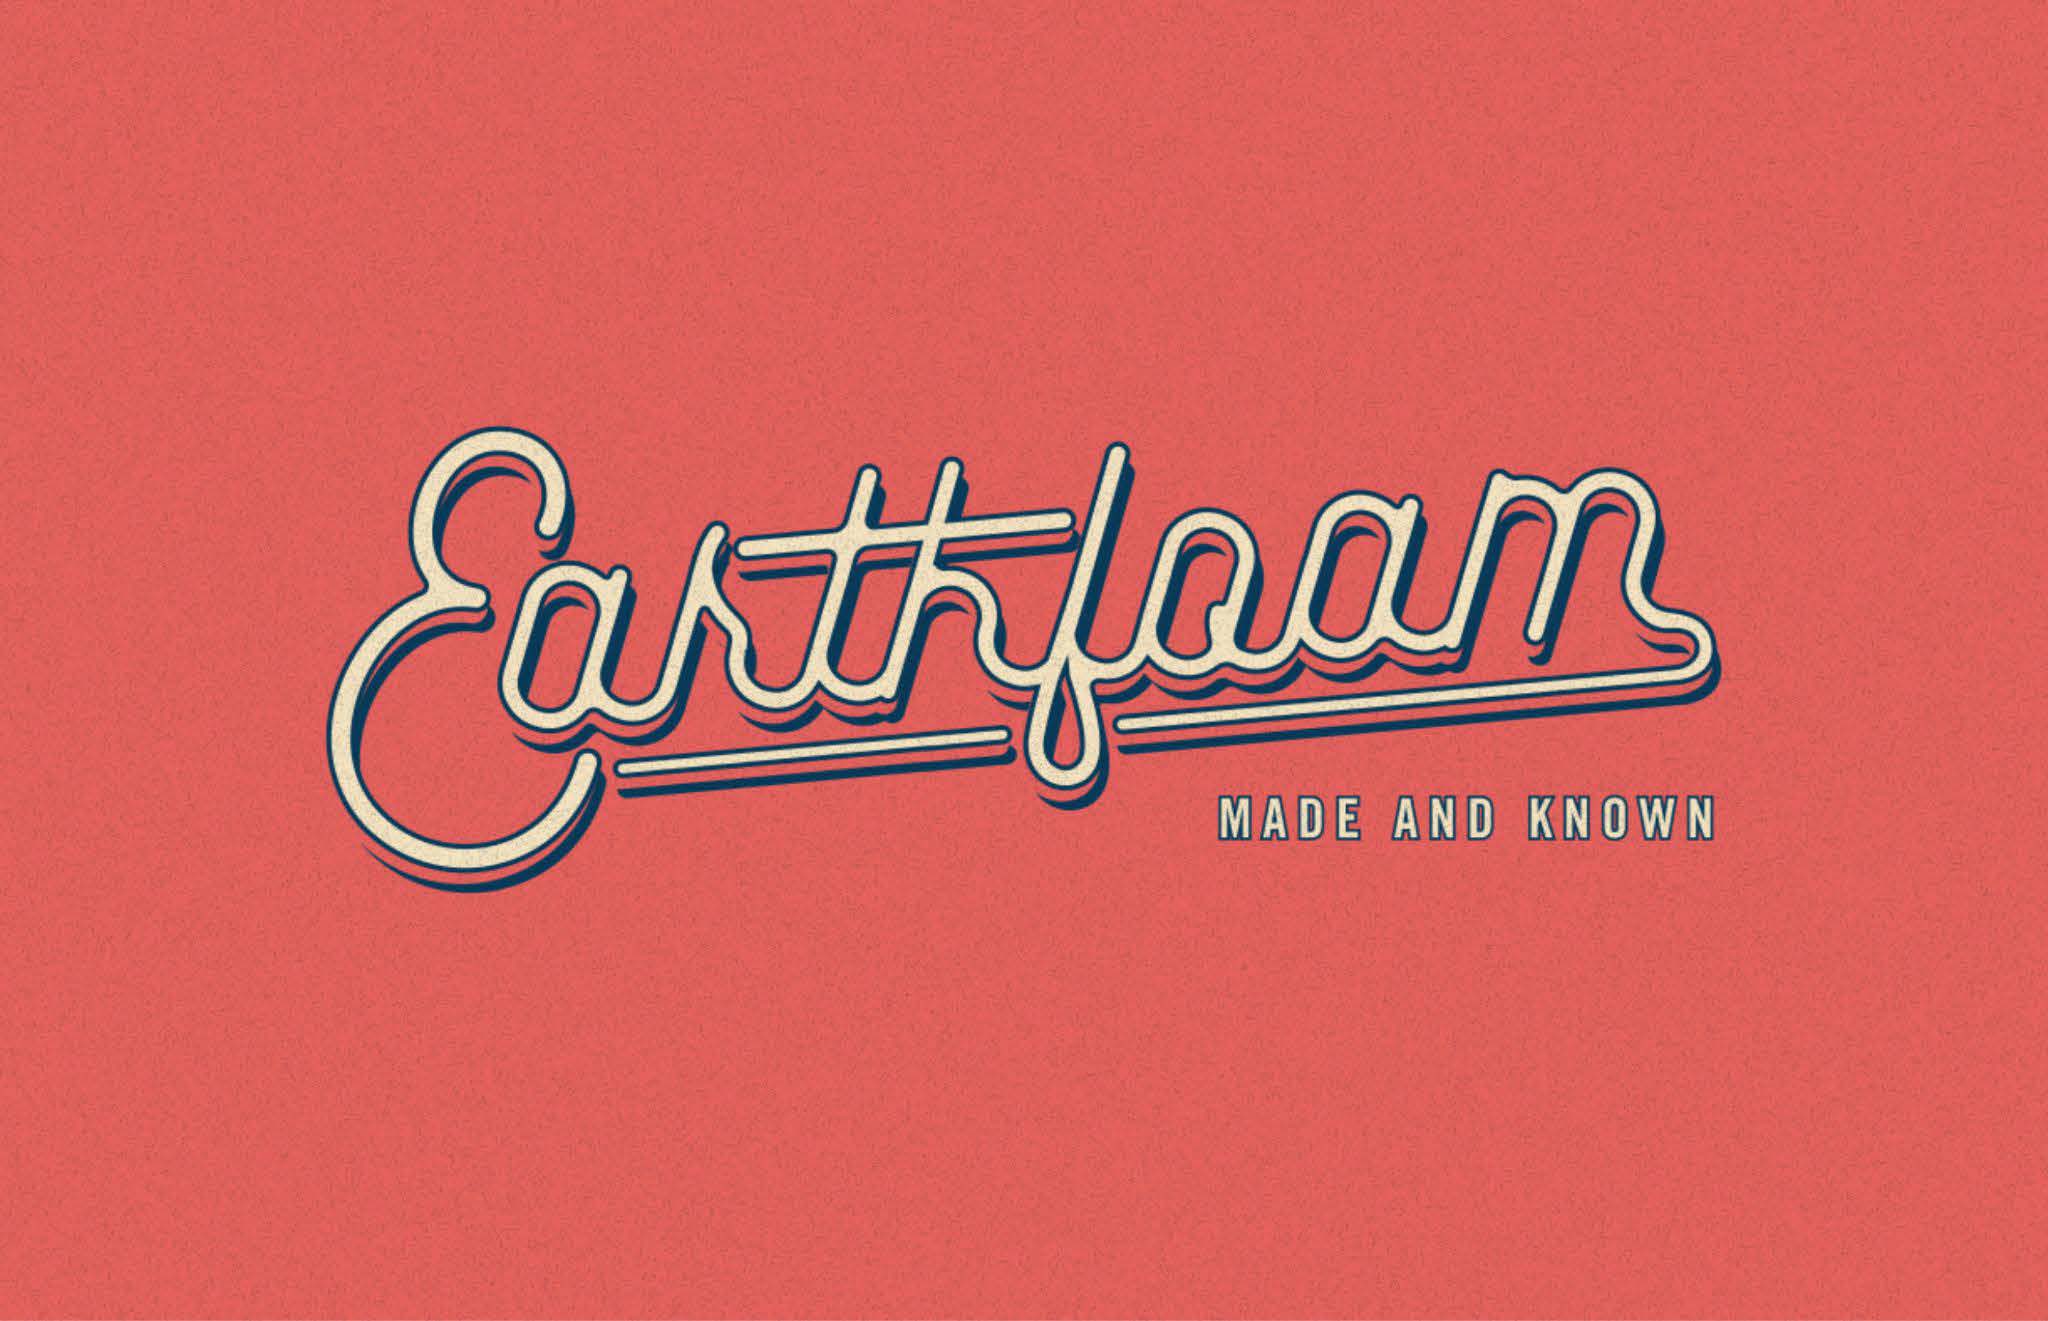 Earthfoam early design